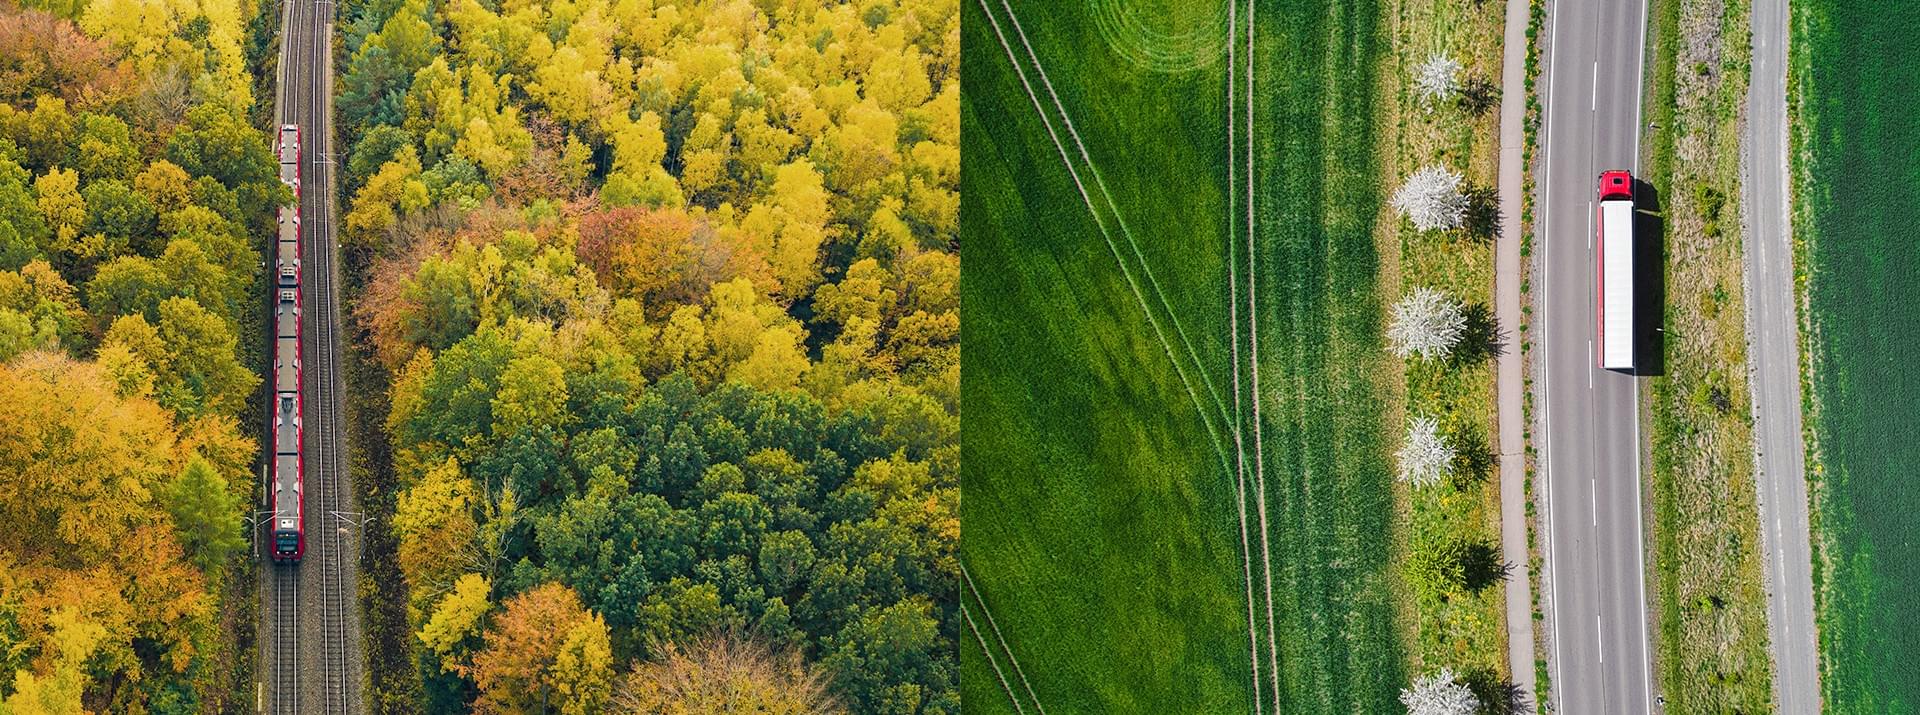 Fotocollage aus zwei Bildern, die aus der Vogelperspektive fotografiert sind: Links fährt ein Zug durch einen Herbstwald; rechts fährt ein Lkw durch grüne Felder.